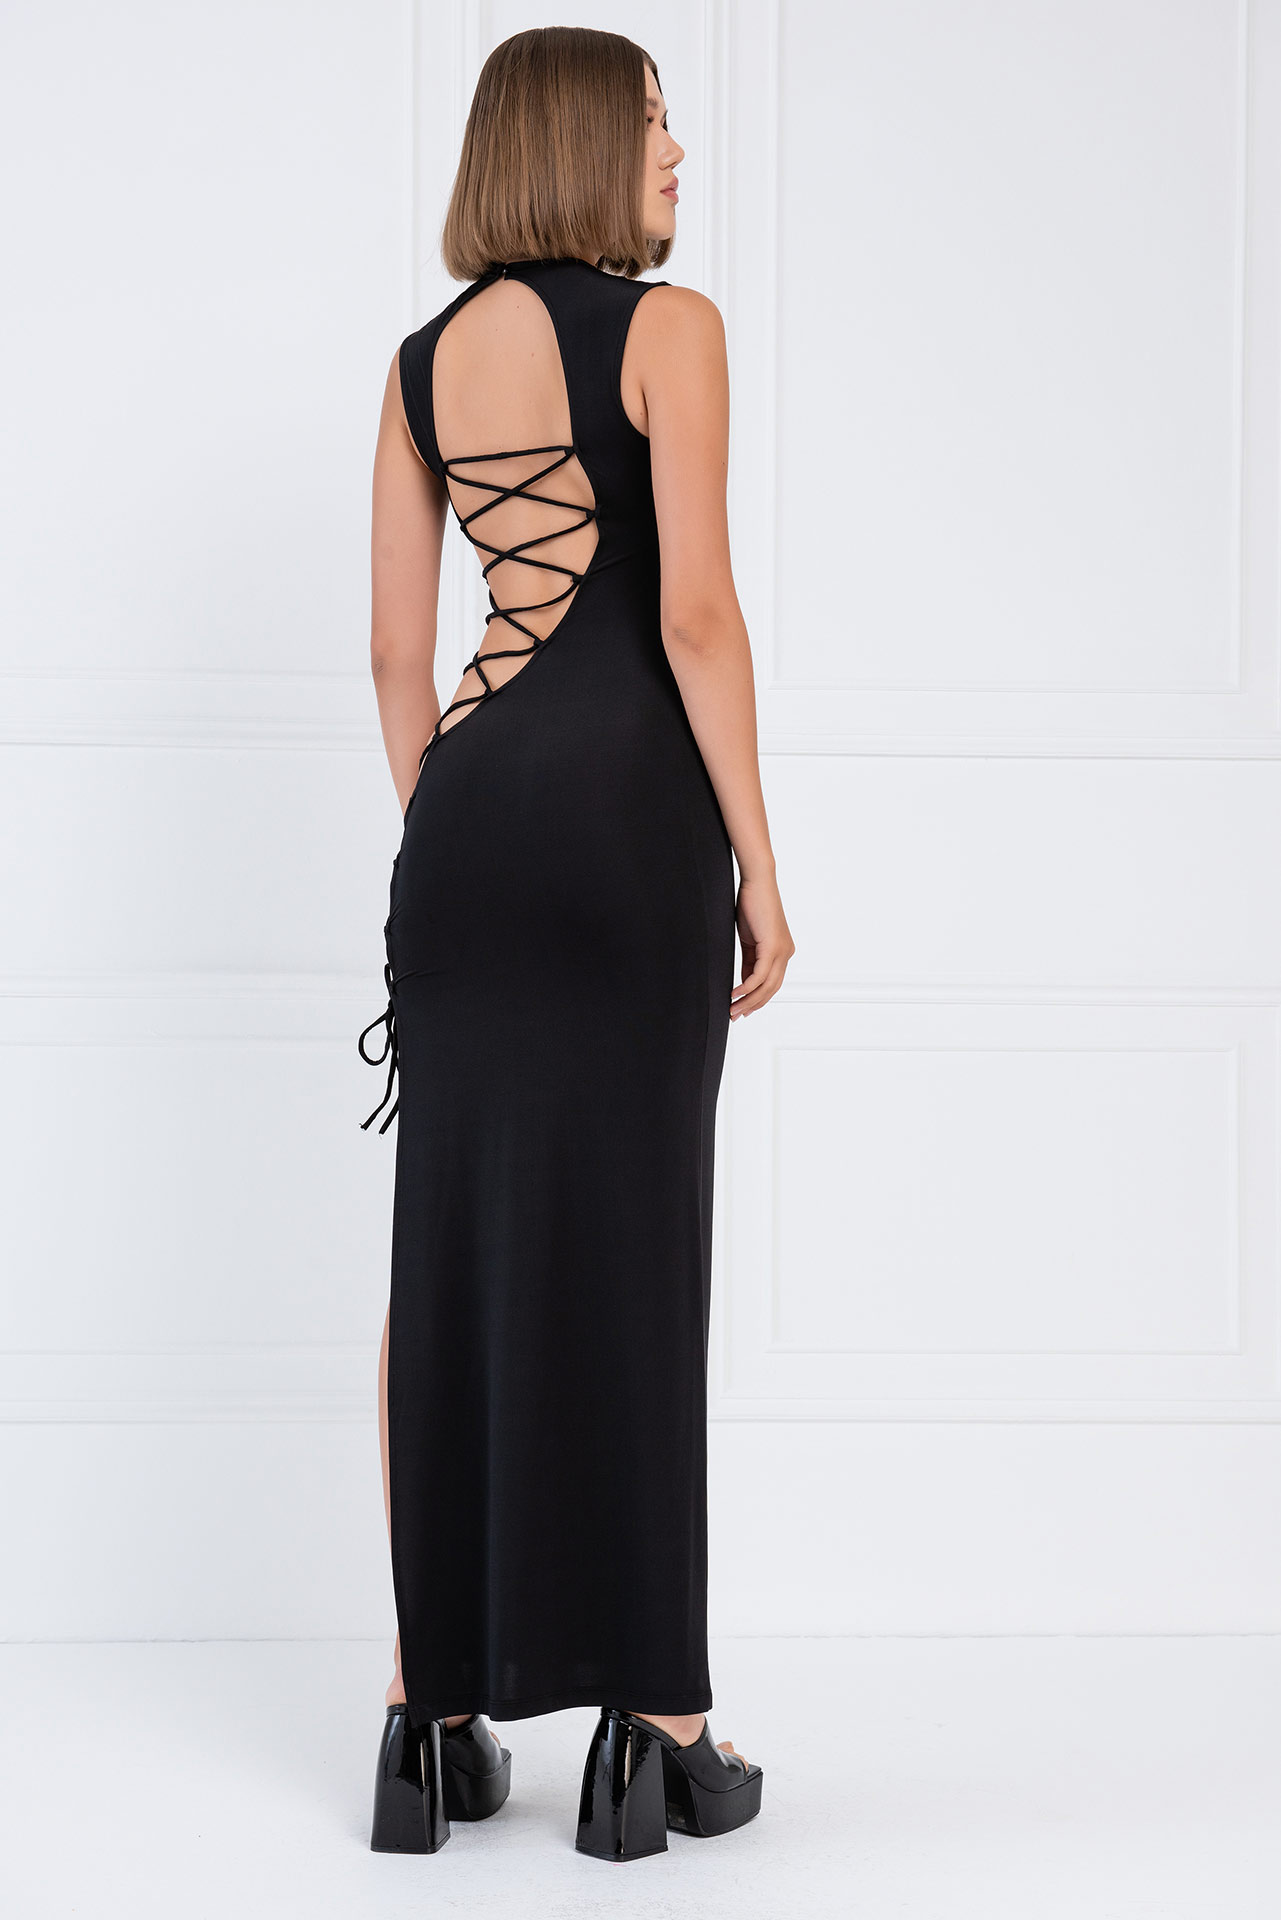 Wholesale Black Crisscross-Back Cut Out Dress